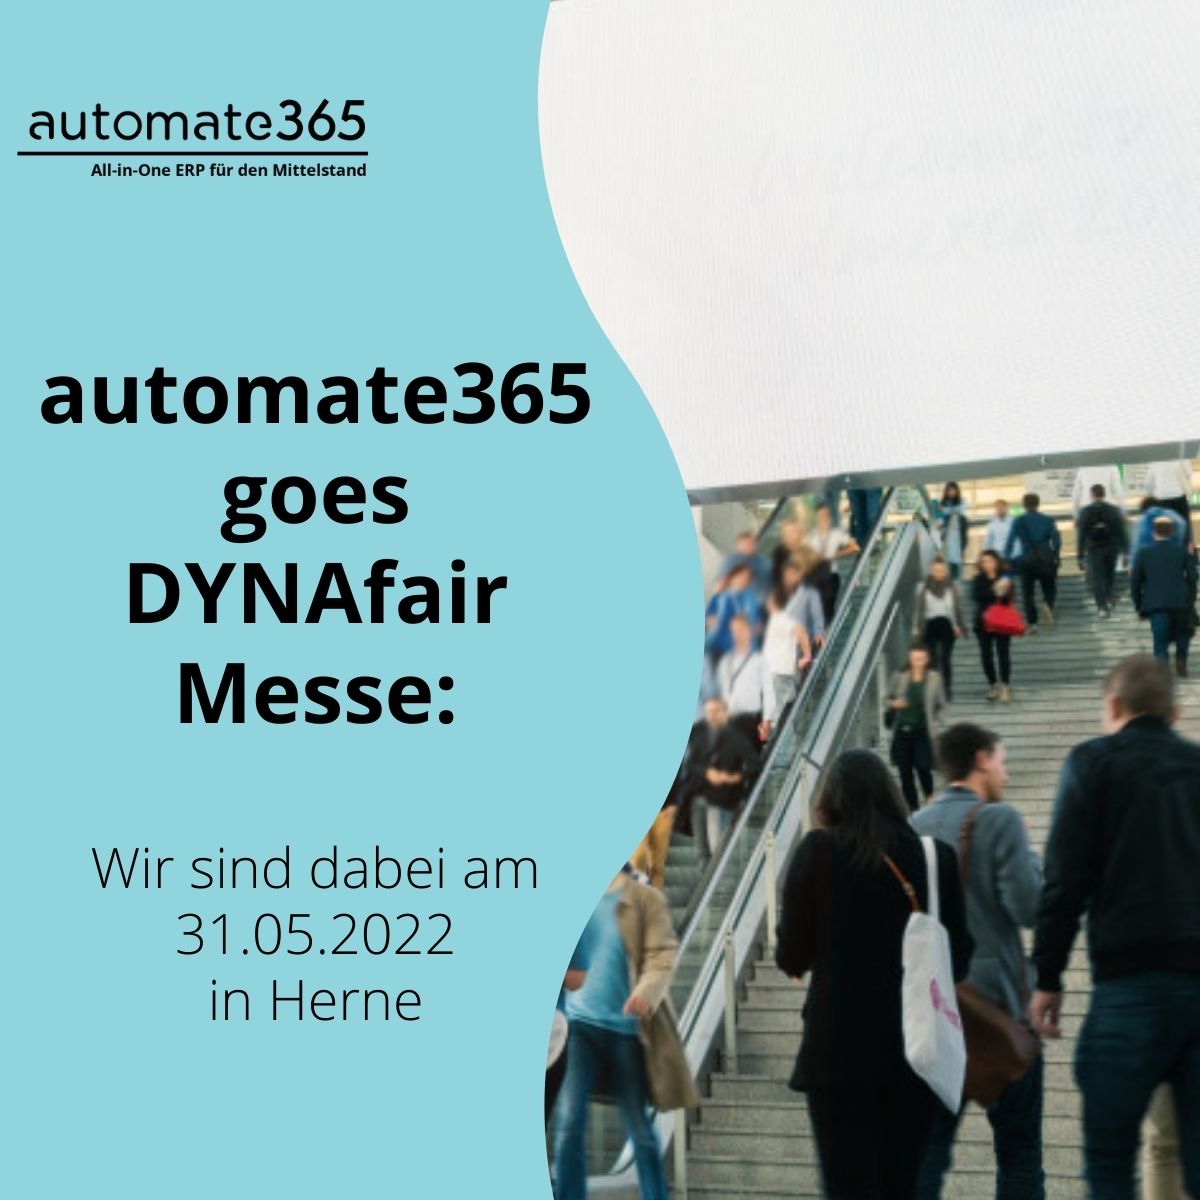 automate365 goes DYNAfair